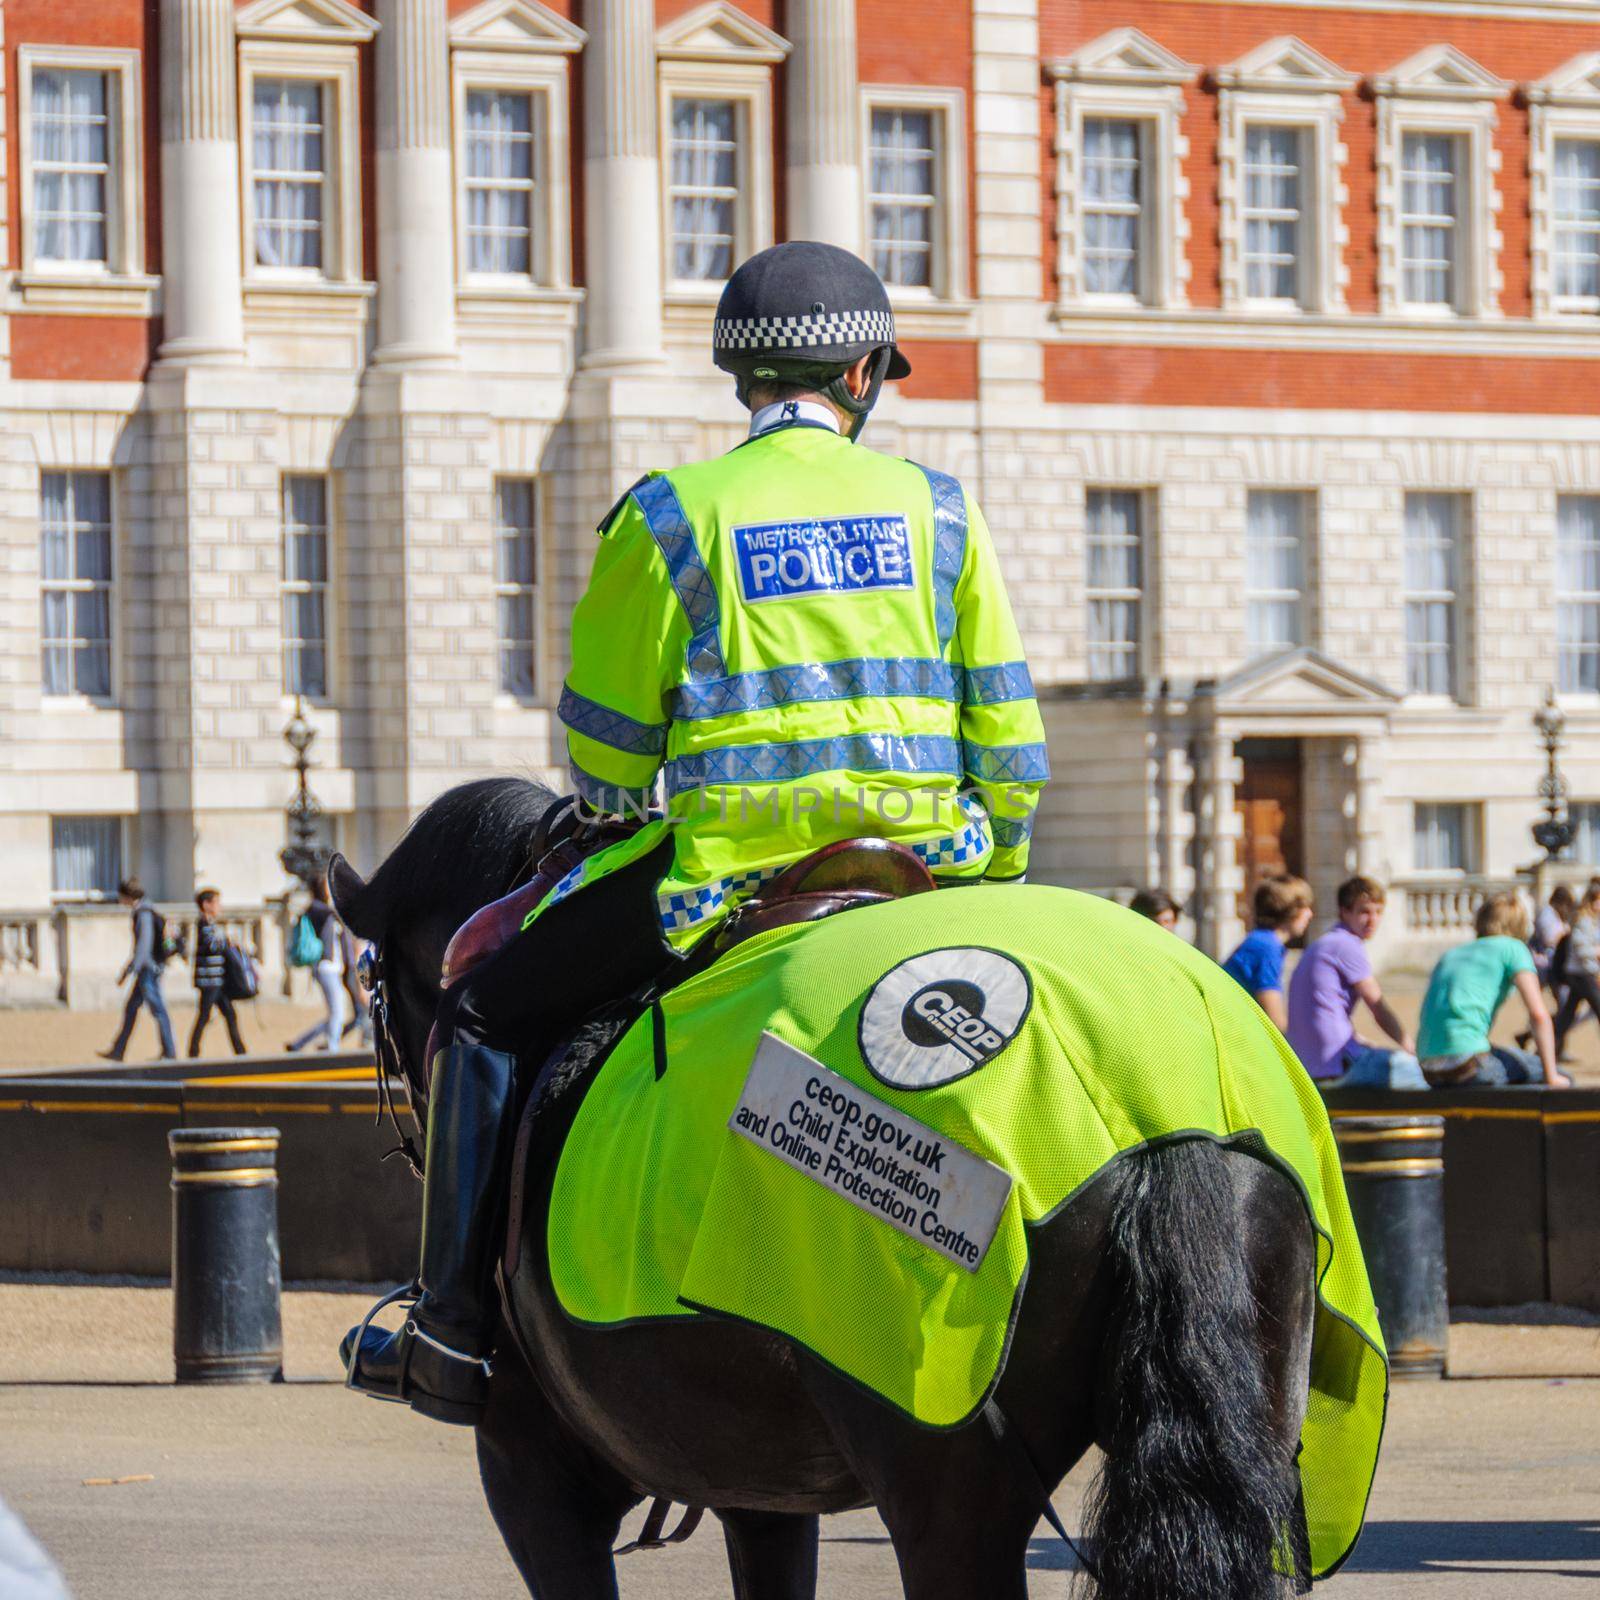 LONDON, UK - CIRCA APRIl 2011: Mounted police officer at Horse Guard Parade.